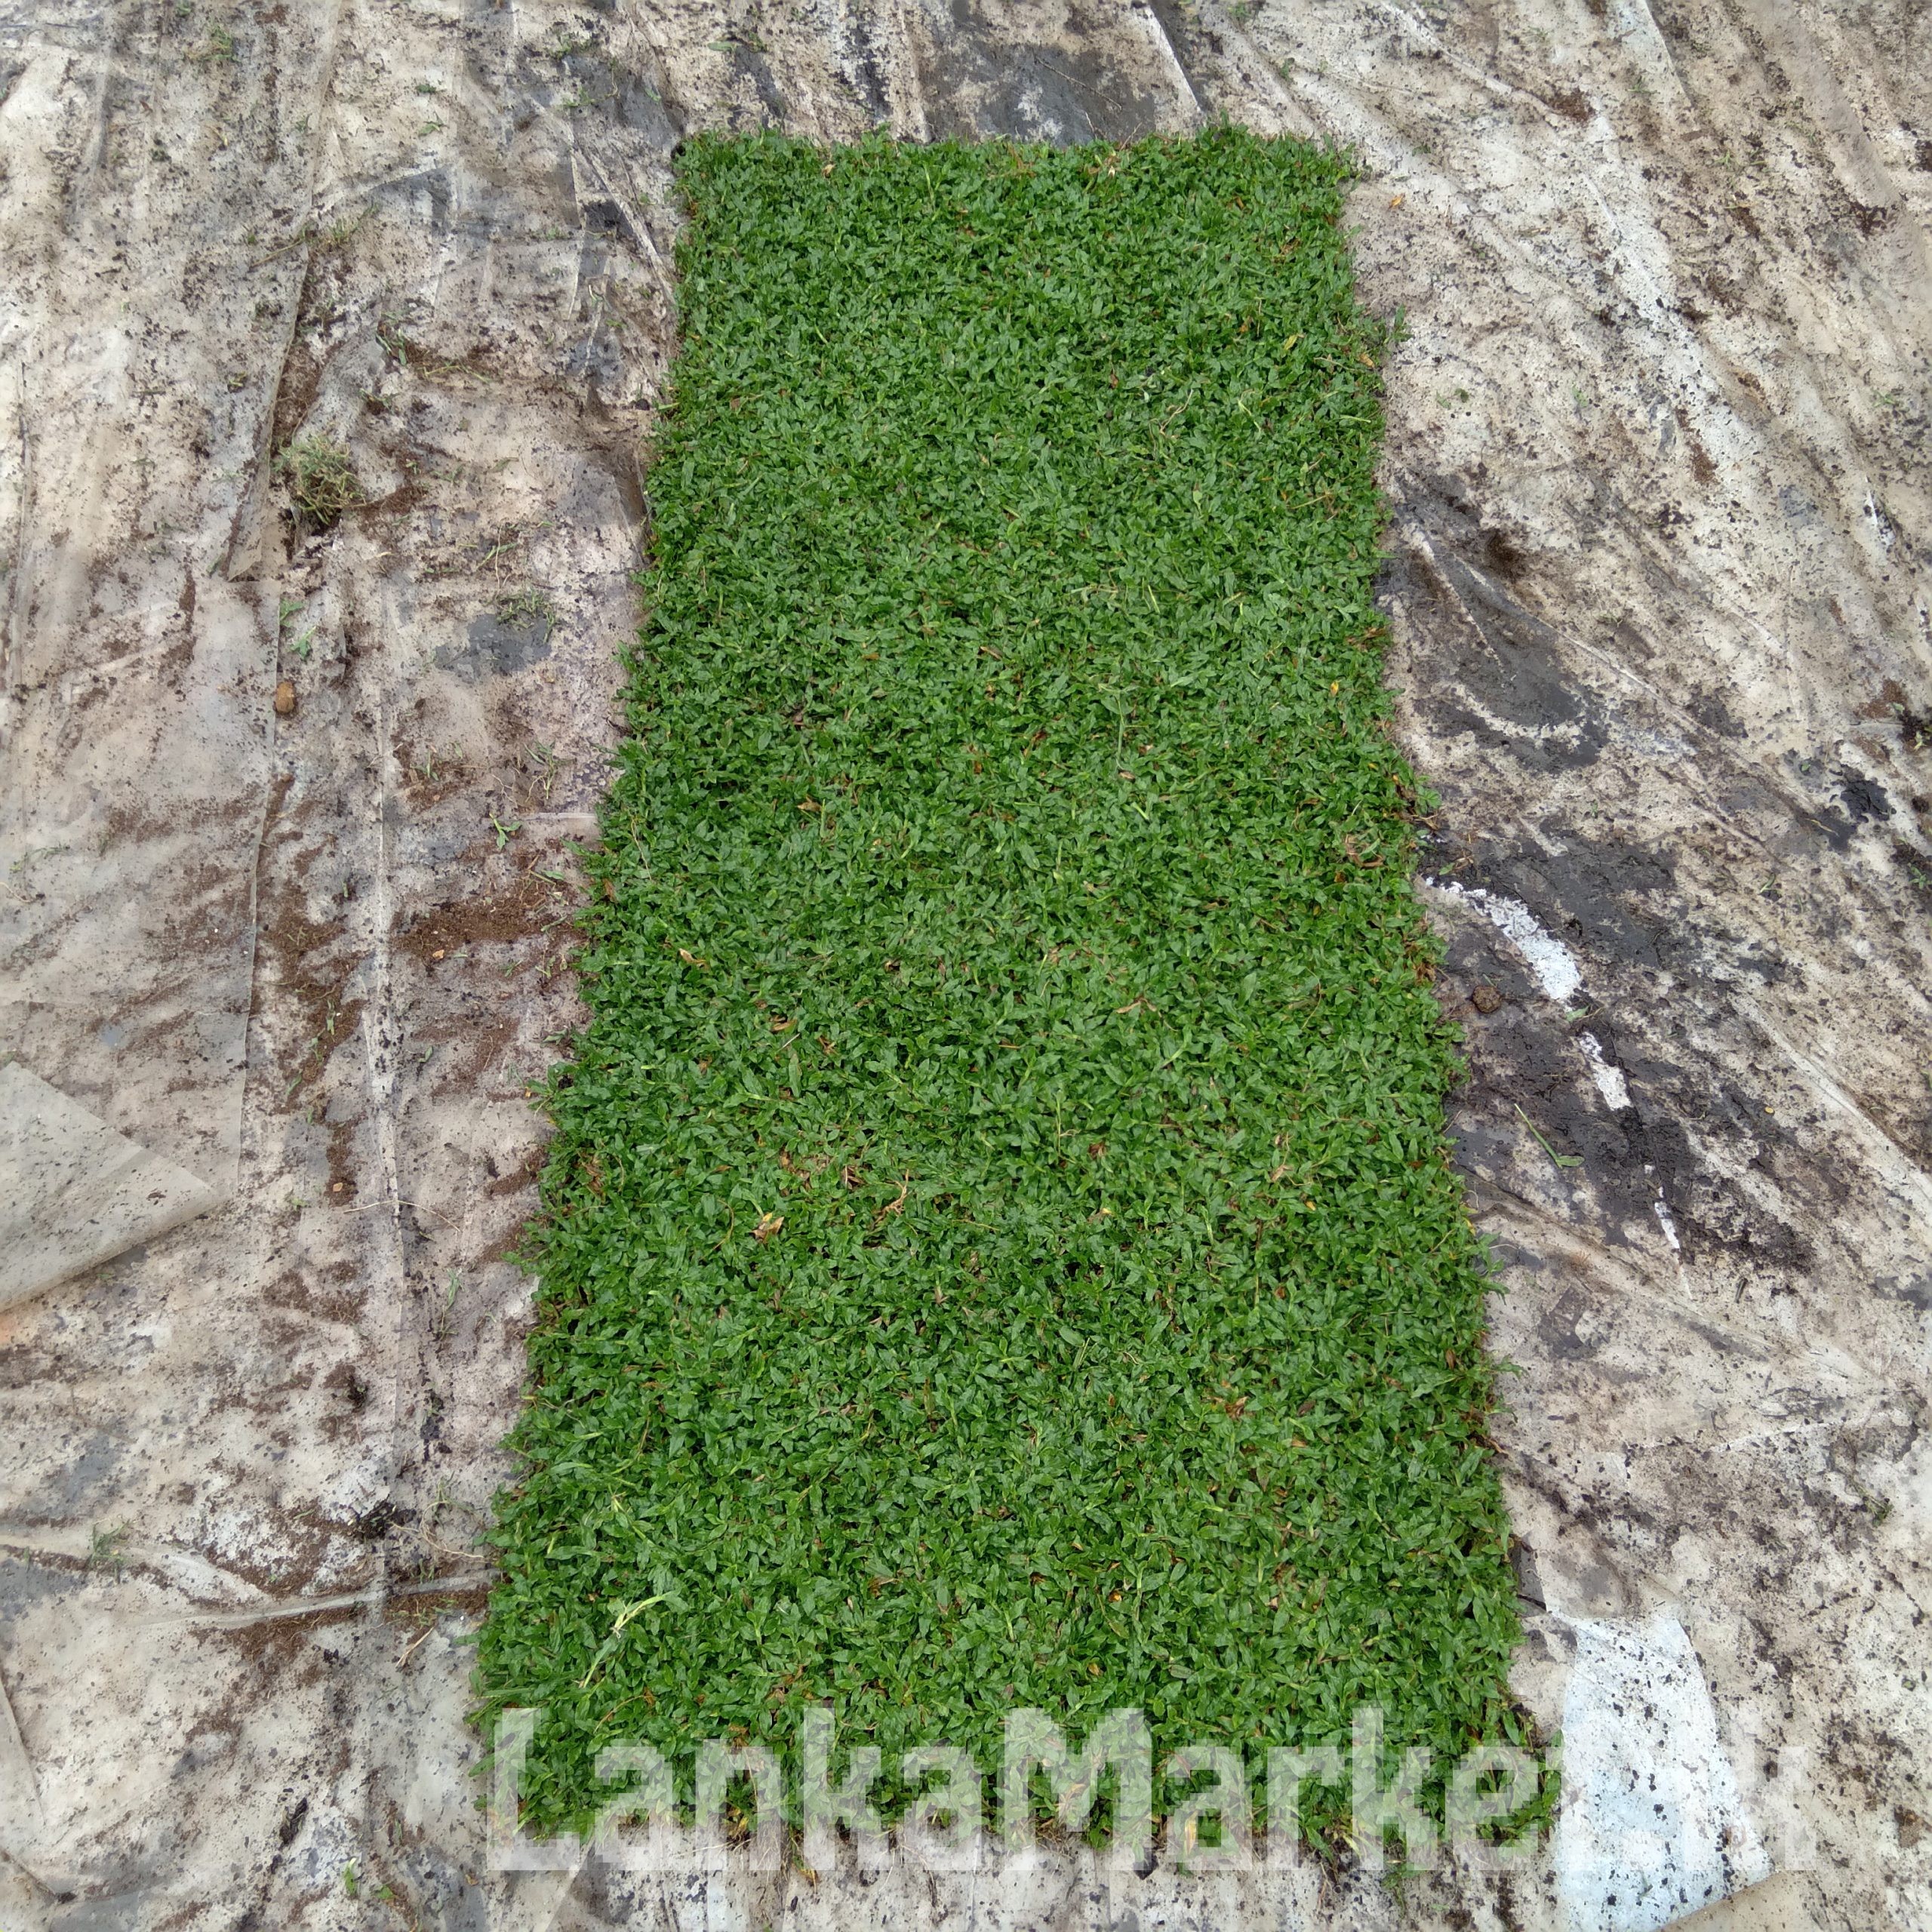 Malaysian /Australian carpet Grass Seththappaduwa